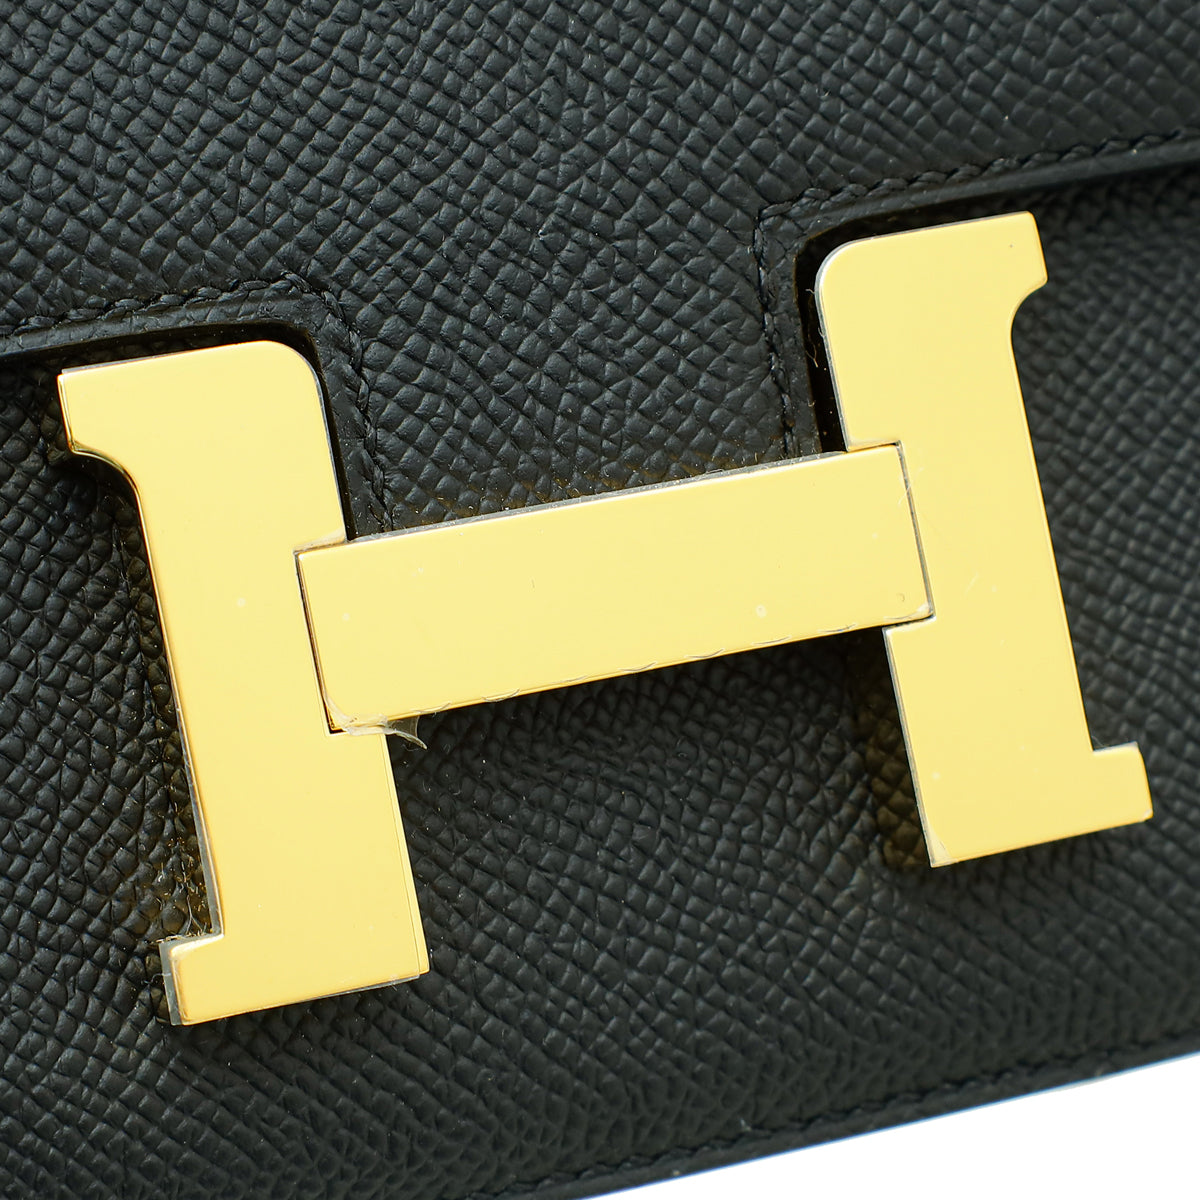 Hermes Noir Constance III 18 Mini Bag